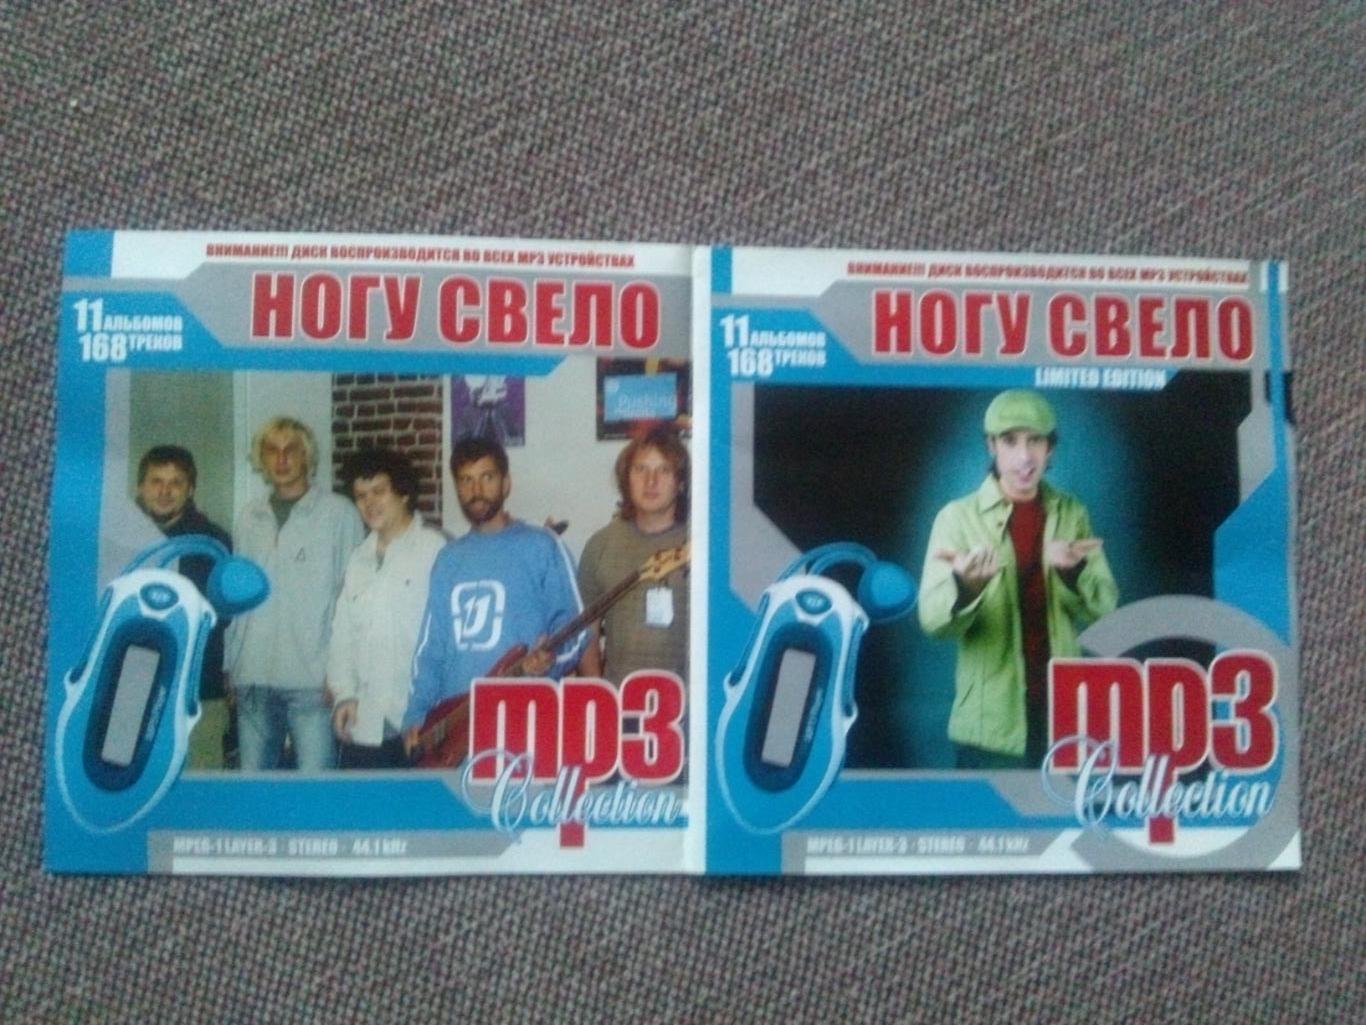 MP - 3 CD диск : группаНогу свело1991 - 2005 гг. 11 альбомов Рок - музыка 2